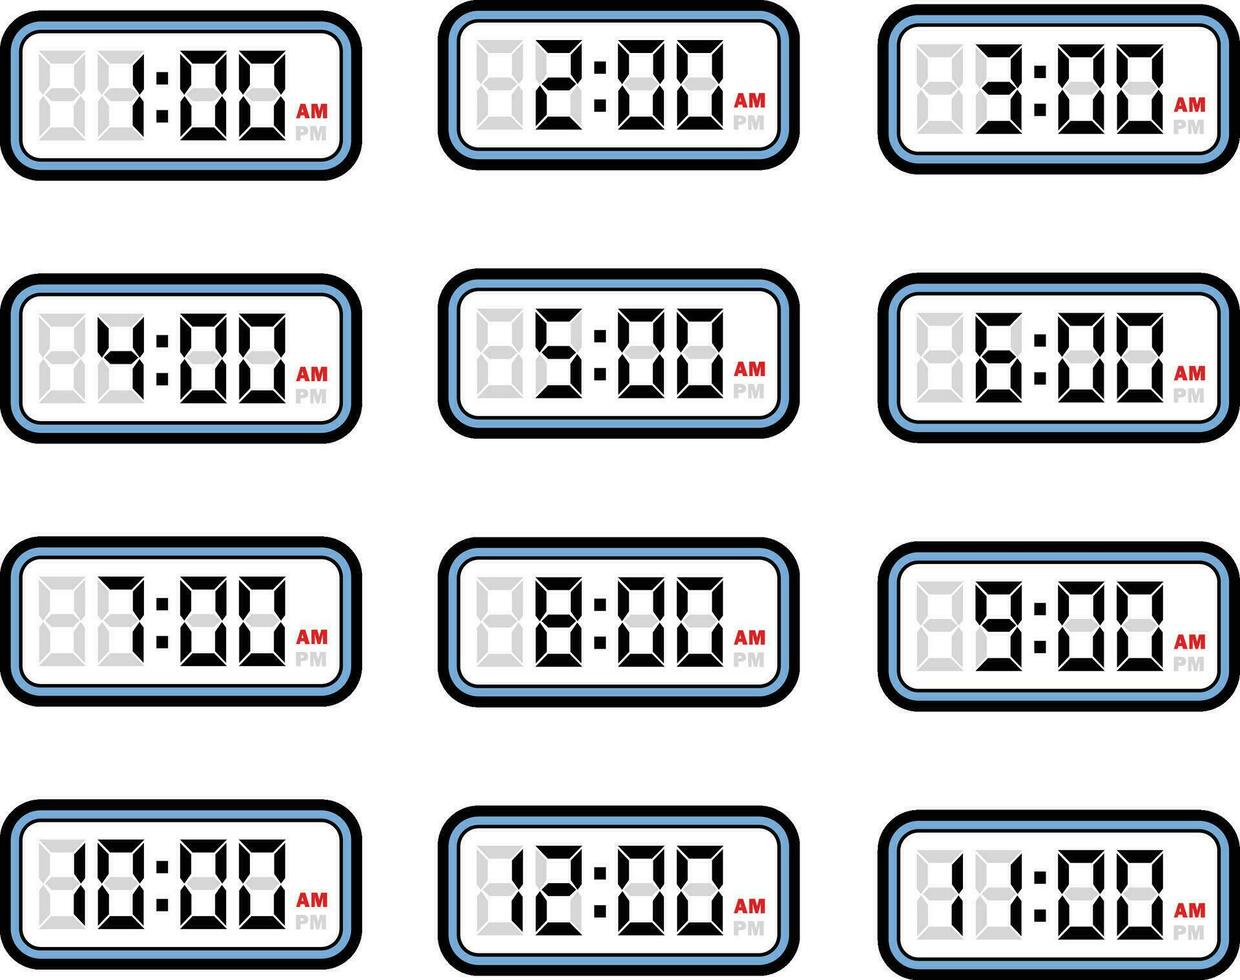 Digital Clock Time Flat Vector Set with 12 Hours Format, Digital Number Illustration